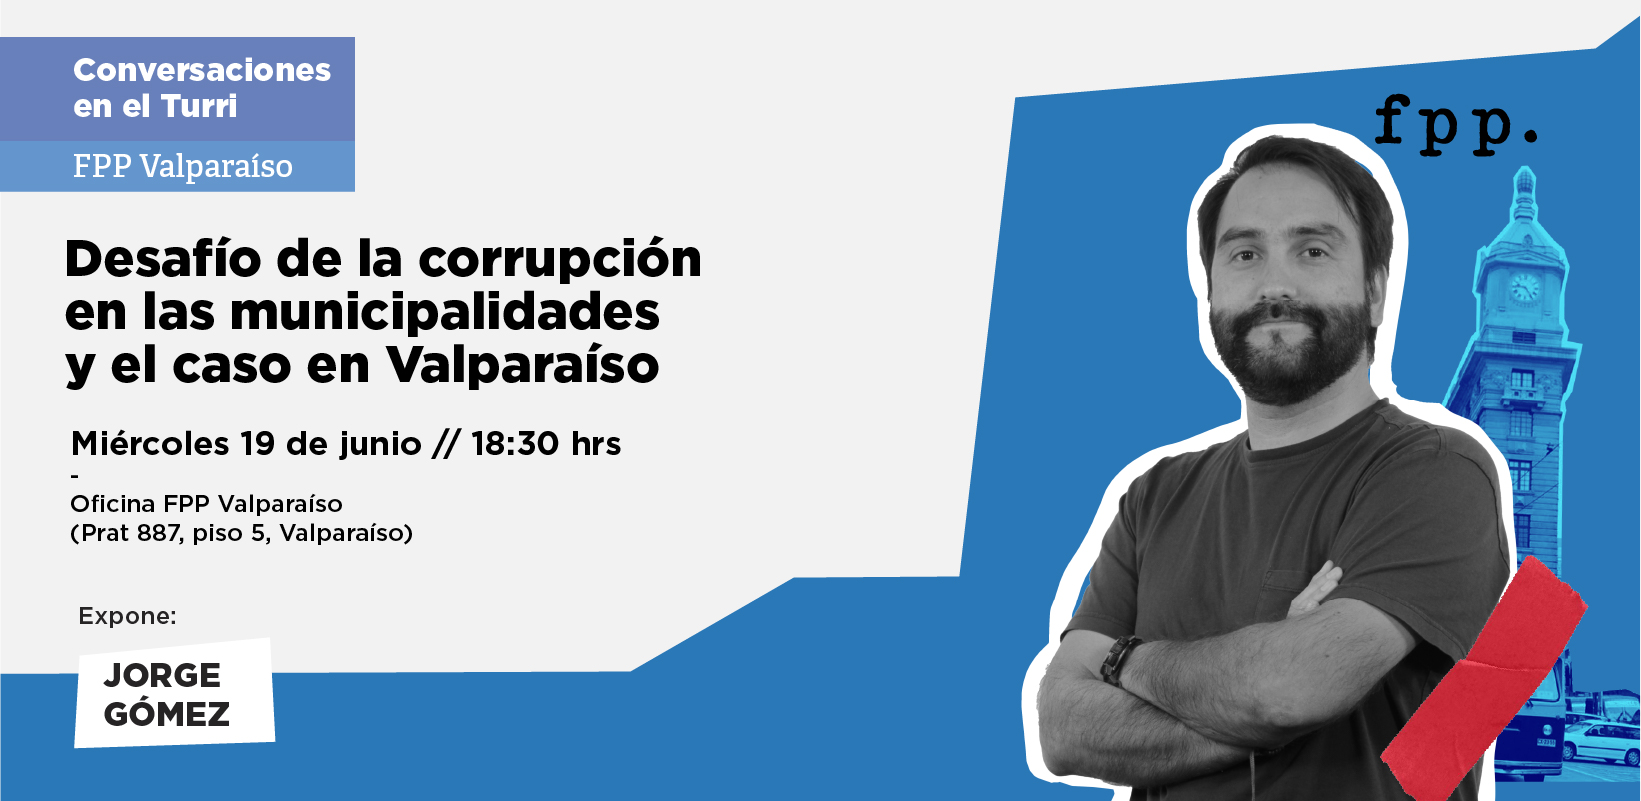 FPP Valparaíso | Conversaciones en el Turri: Desafío de la corrupción en las municipalidades y el caso de Valparaíso